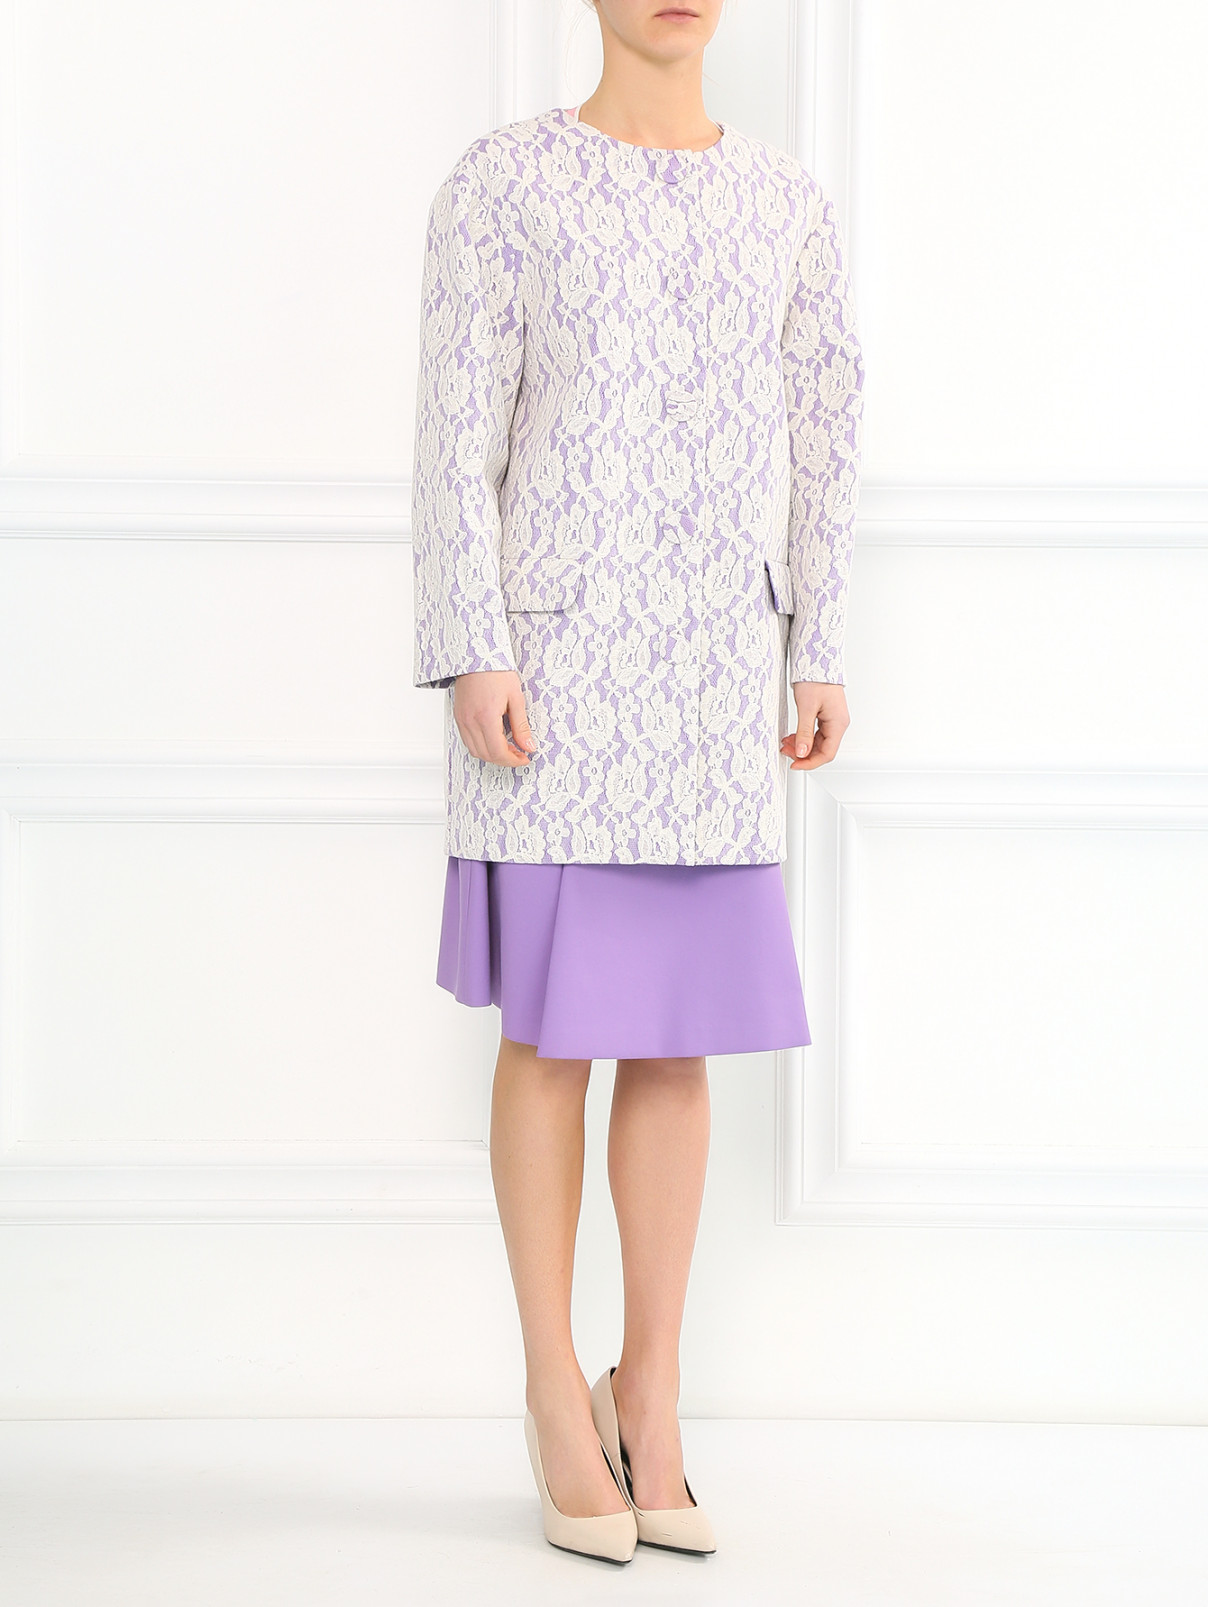 Пальто из хлопка декорированное кружевом Moschino Boutique  –  Модель Общий вид  – Цвет:  Фиолетовый